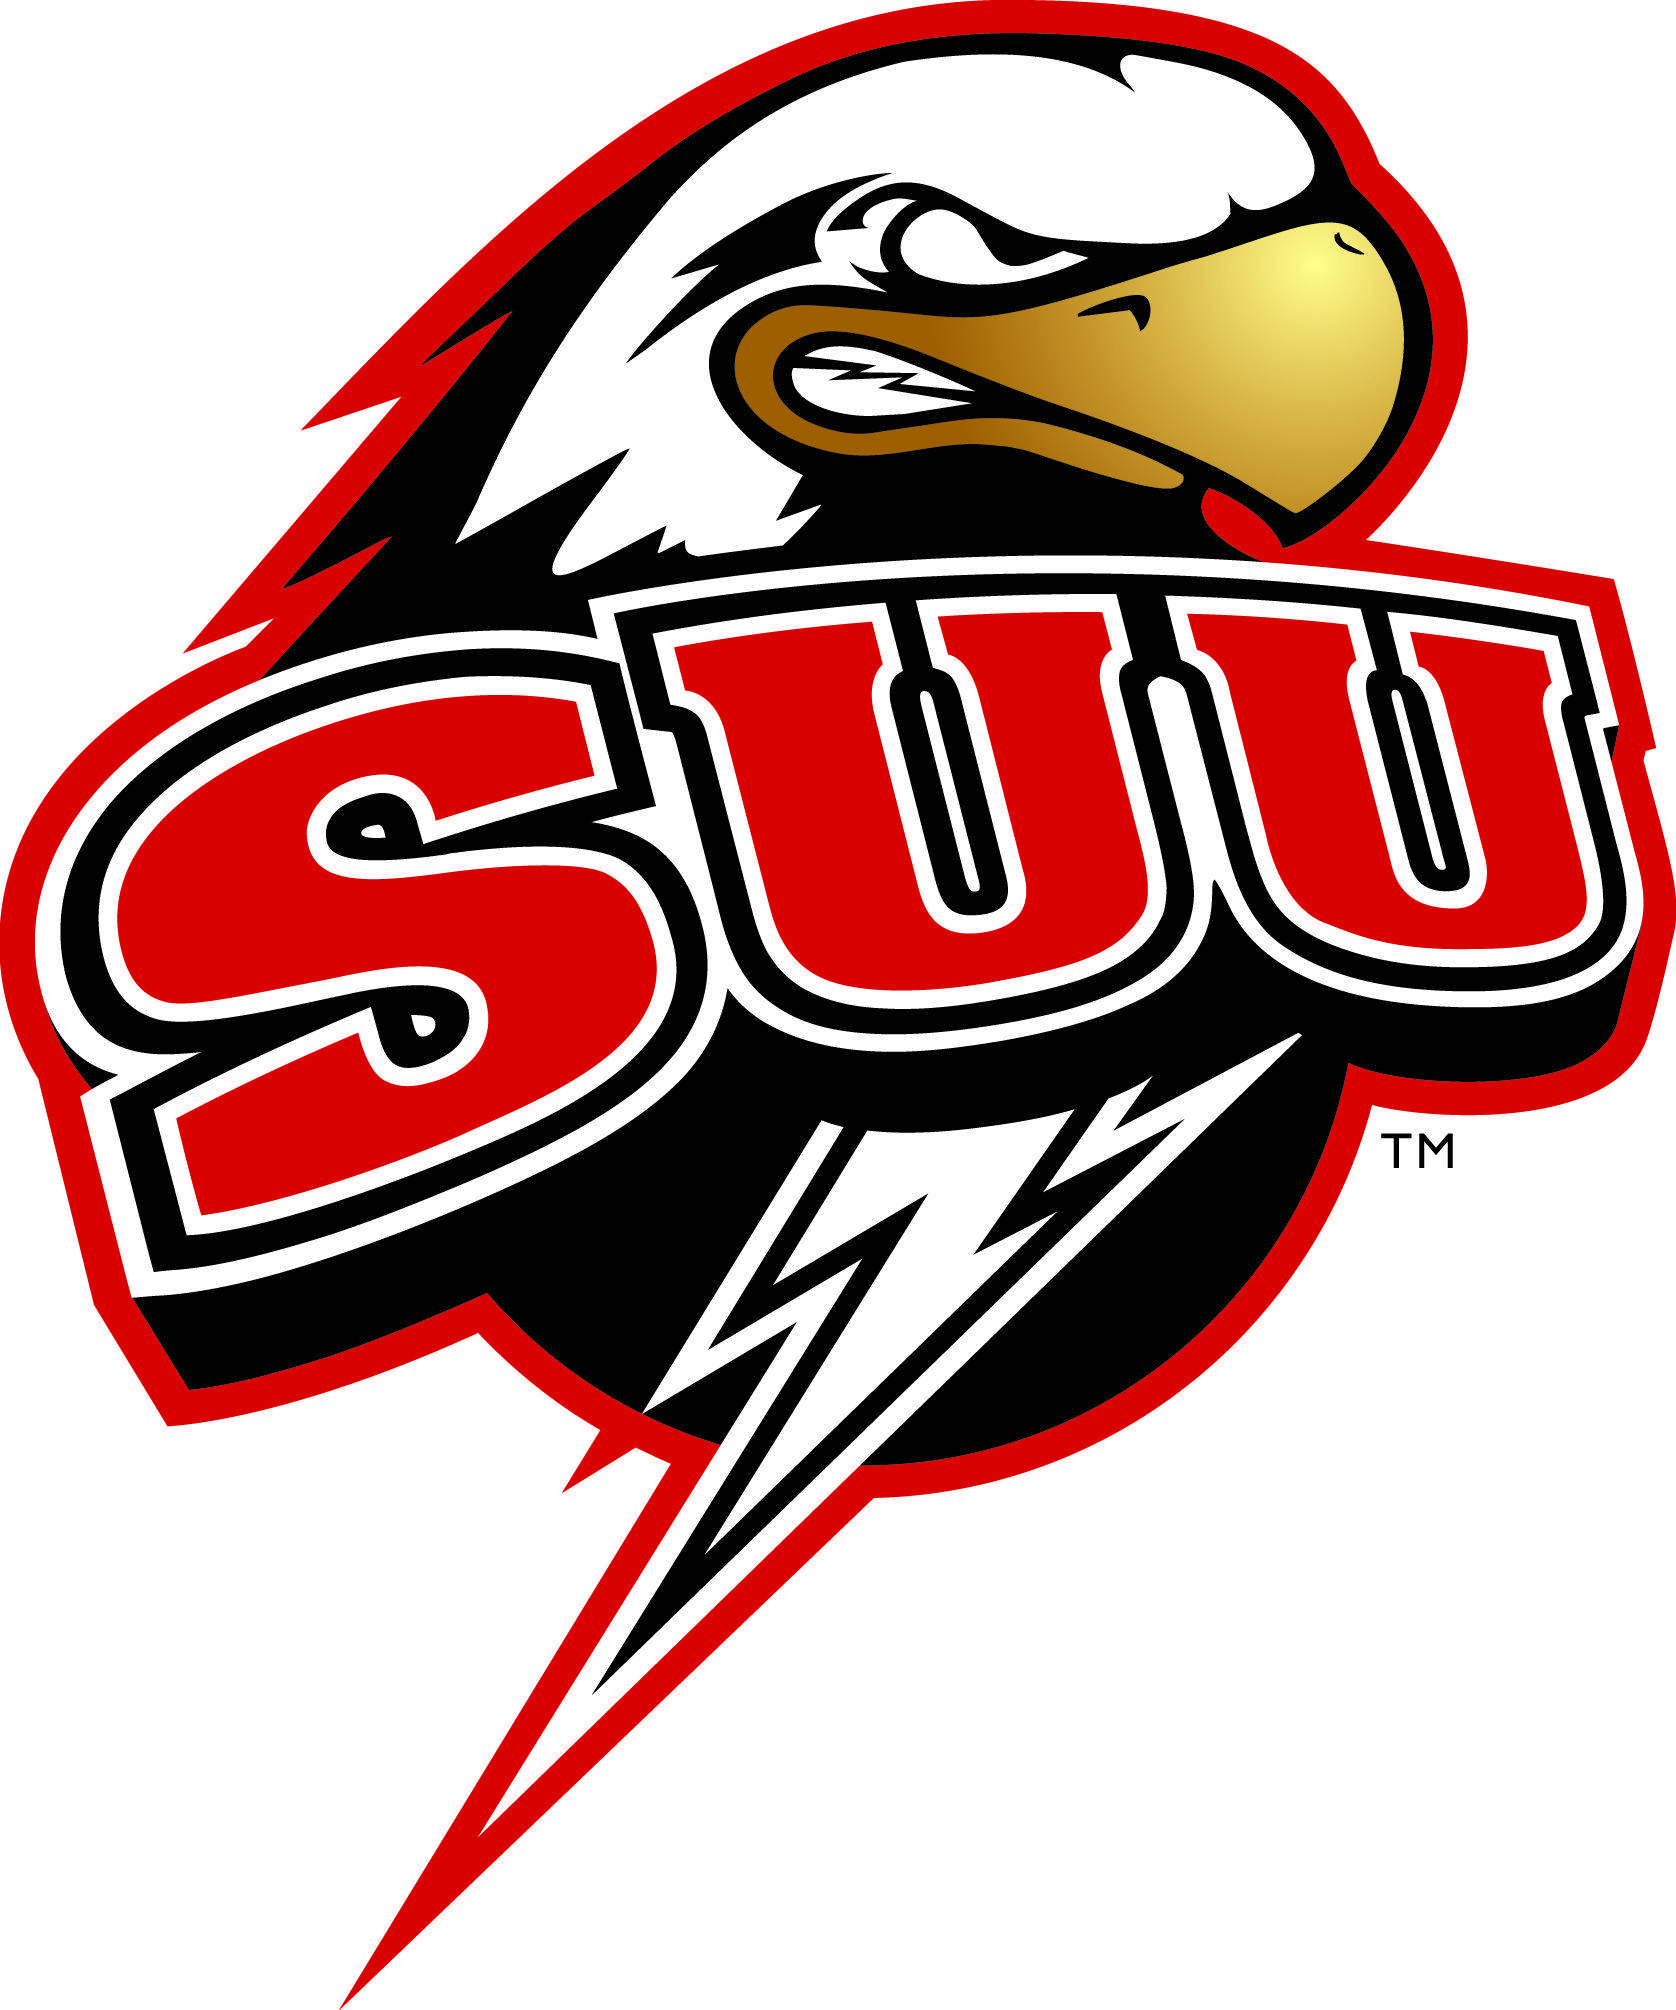 University of Utah Football Logo - Southern Utah University | Big Sky Team Logos | Utah, University of ...